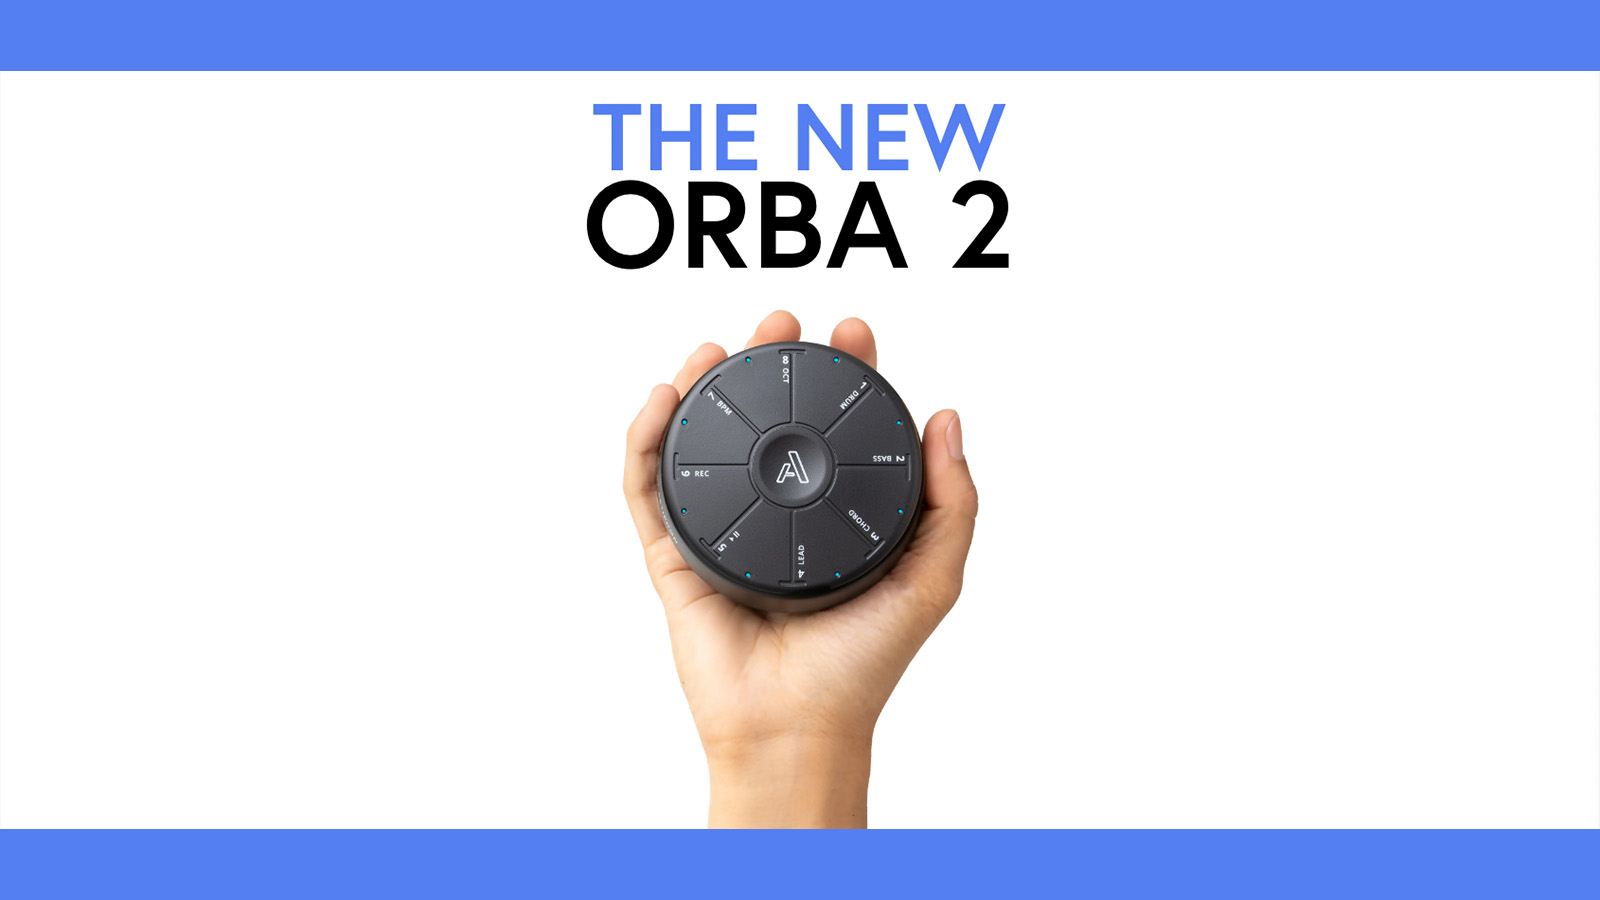 Artiphon（アーティフォン）から手のひらサイズのMIDIデバイス「ORBA 2」が発売！